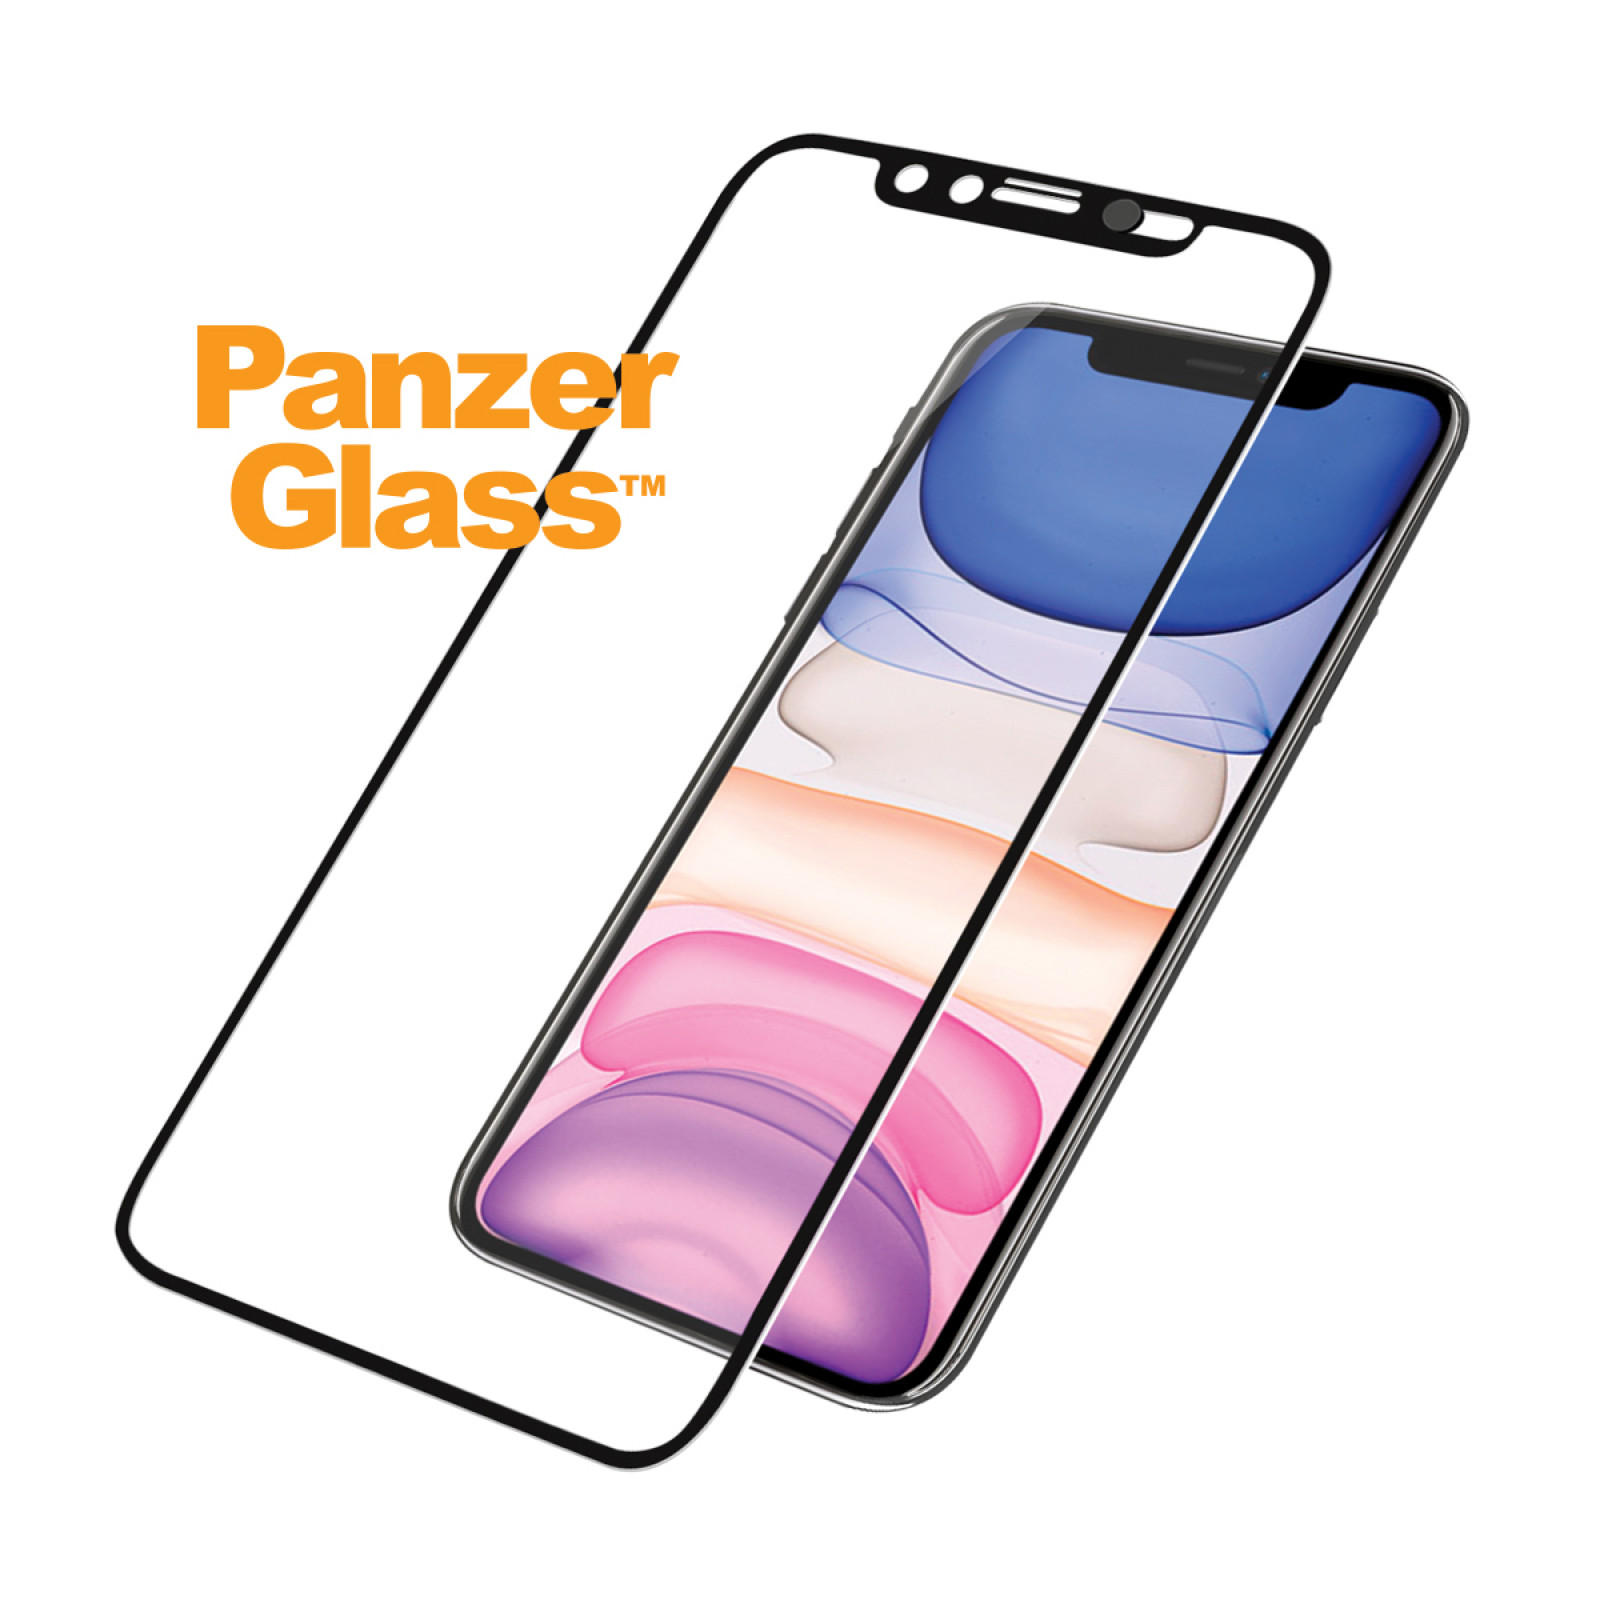 Стъклен протектор PanzerGlass за Apple iPhone 11/iPhone XR Case Friendly CamSlider Черен